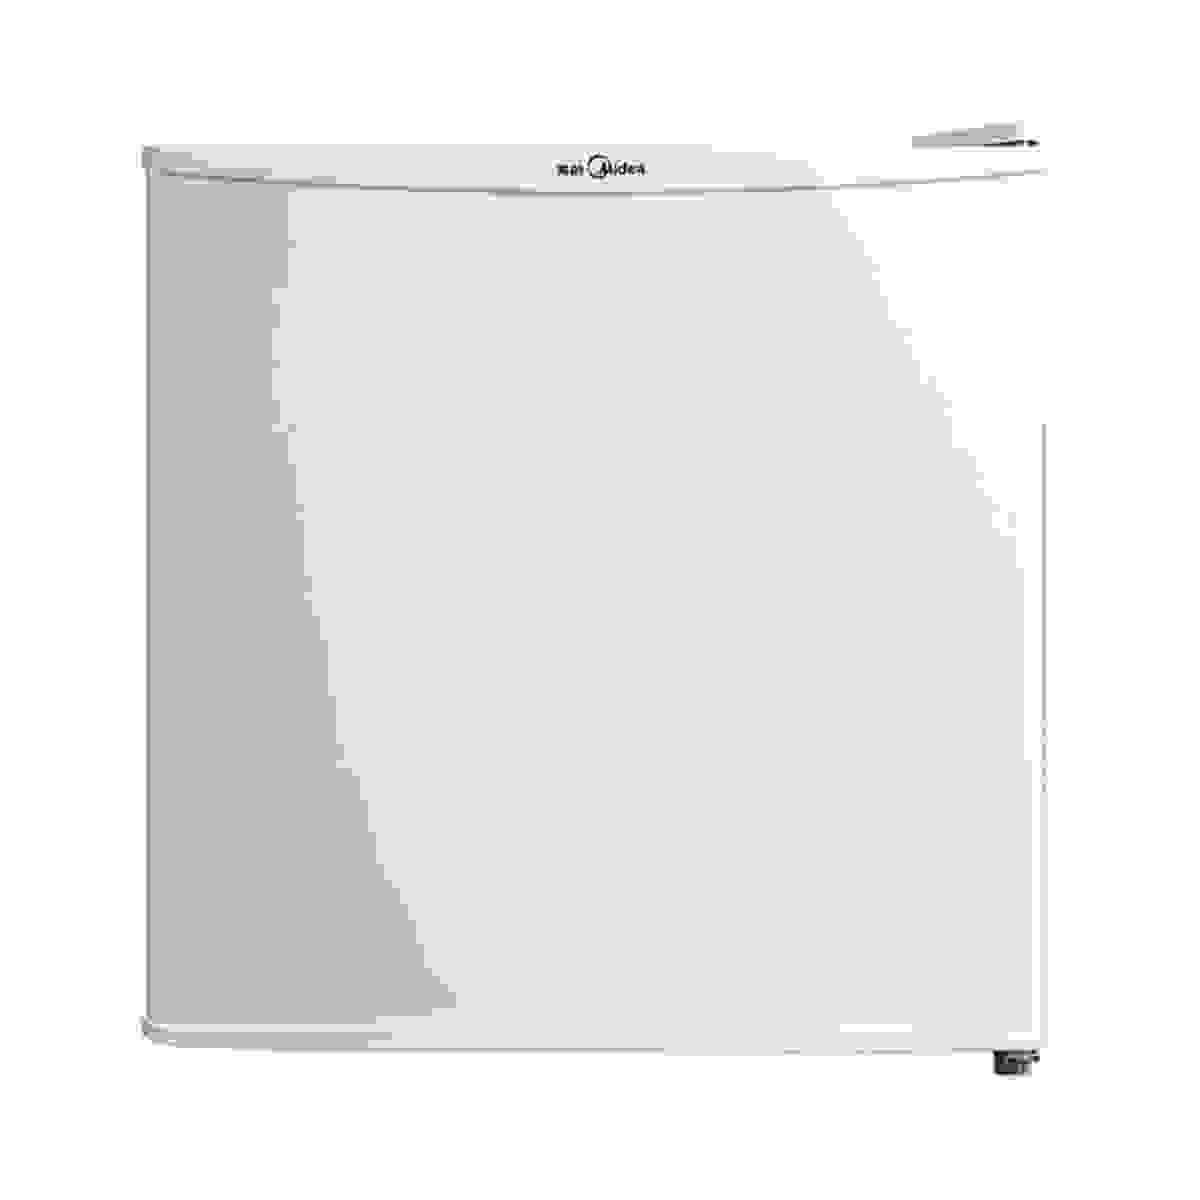 Midea/美的 美的 冰箱 BC-45M 白色冰箱 说明书.pdf